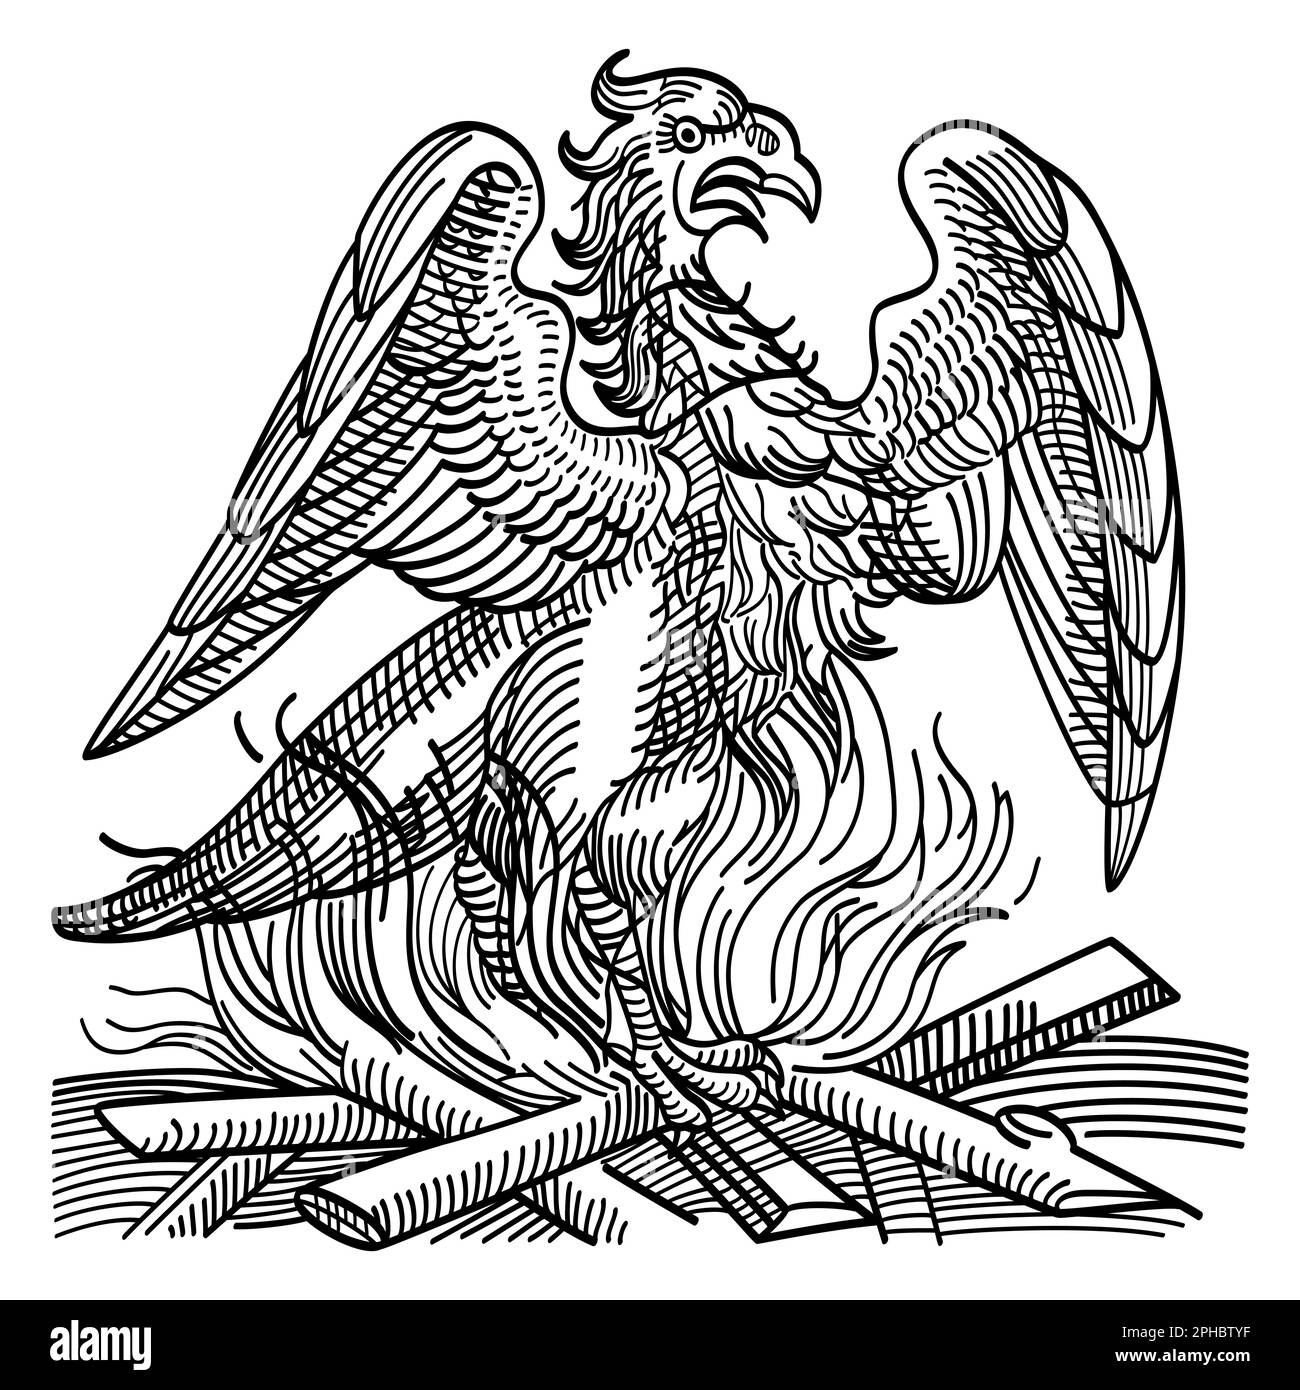 Un fénix obtiene nueva vida al levantarse de las cenizas de su predecesor. Pájaro inmortal y criatura de la antigua mitología griega. Foto de stock